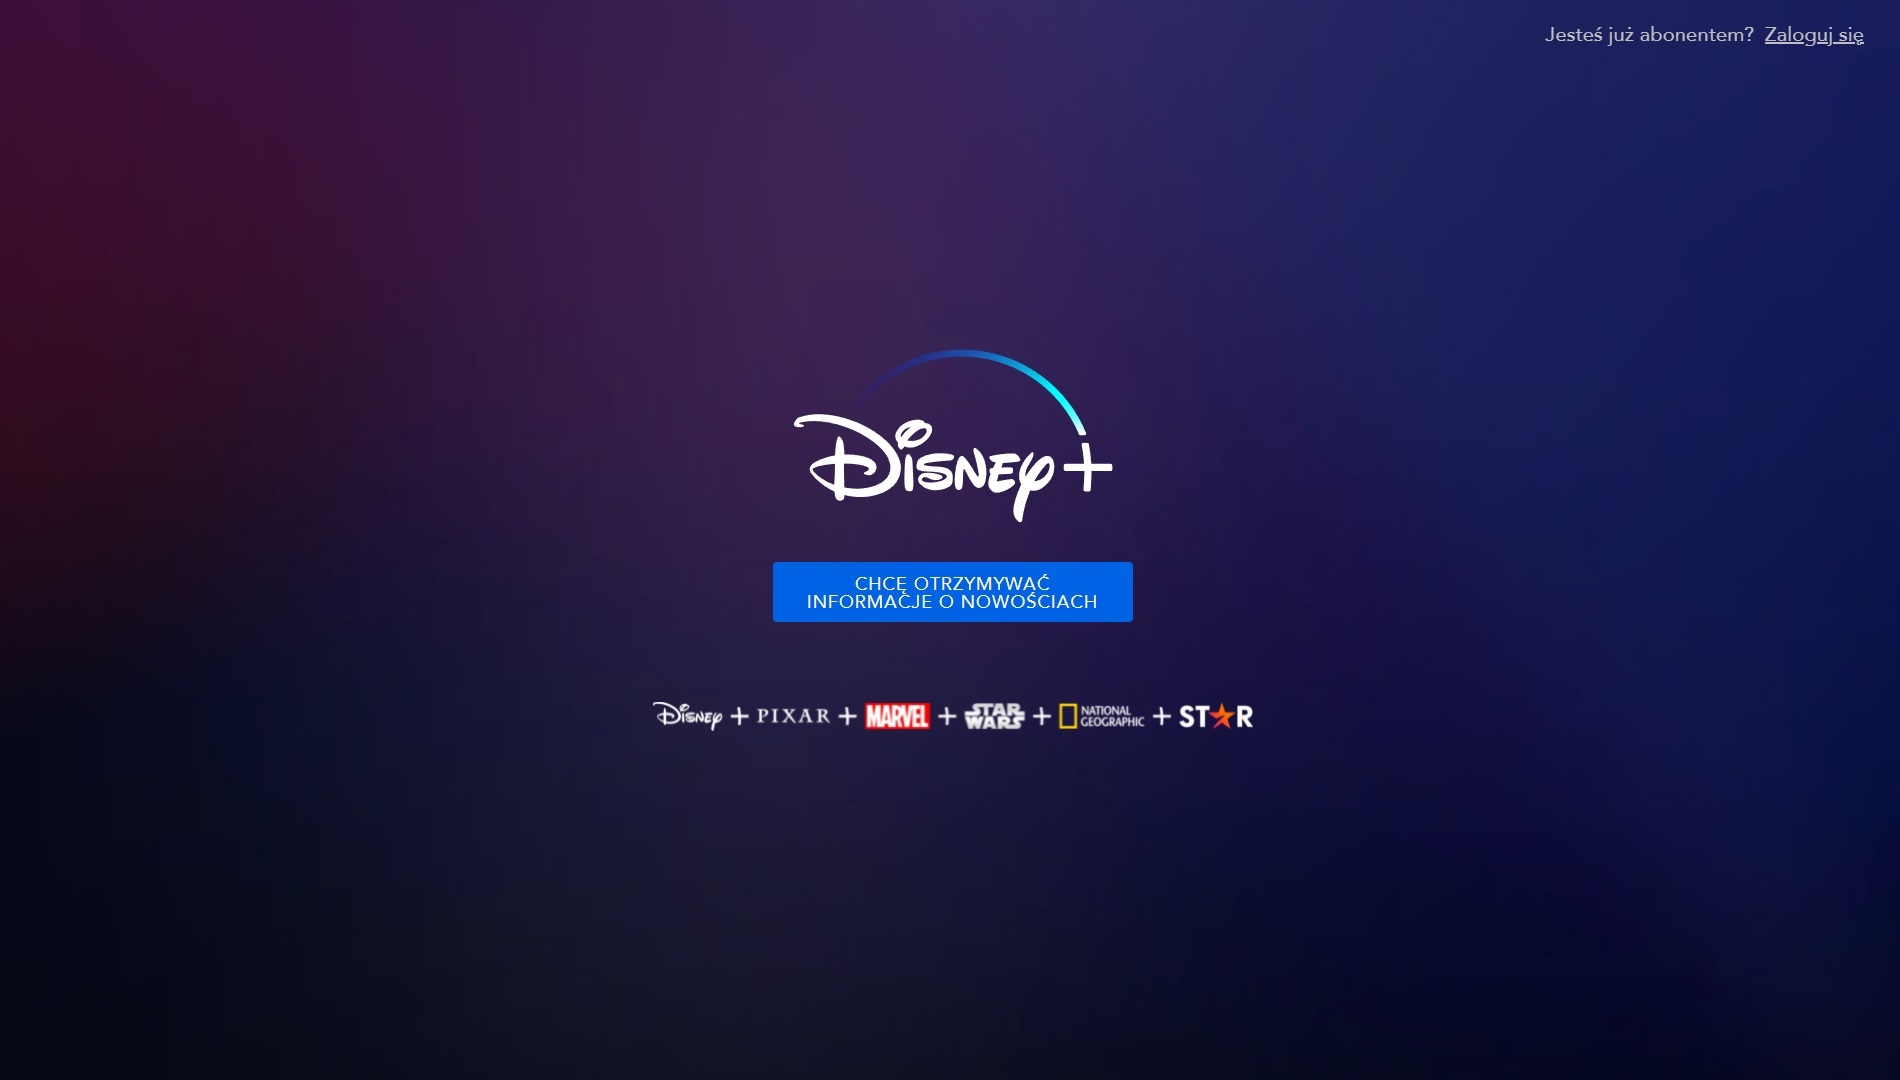 Disney+ Disney Plus teaser zapowiedź Polska PL